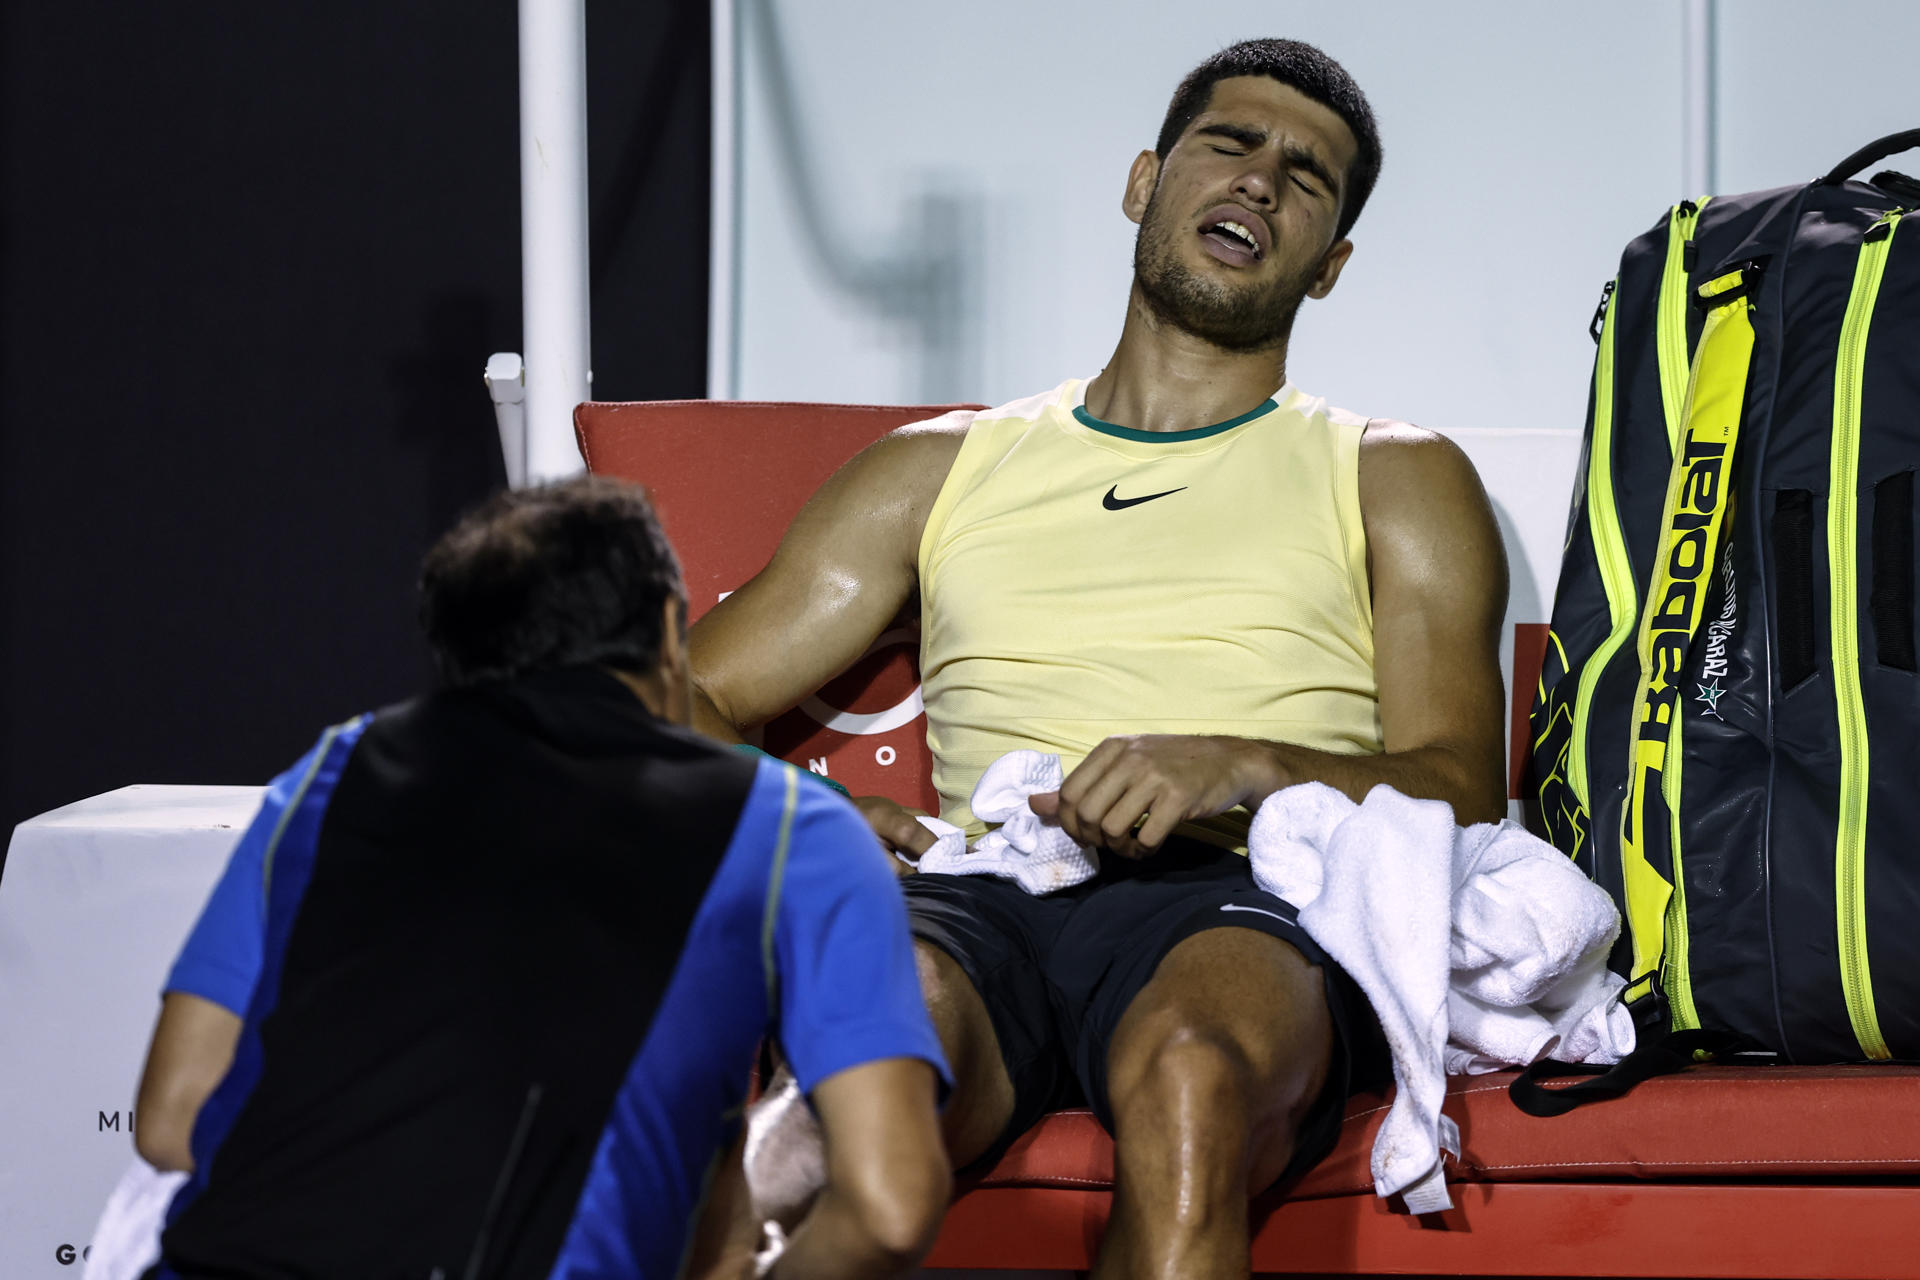 Alcaraz participará en Indian Wells pese a su lesión en el Abierto de Río